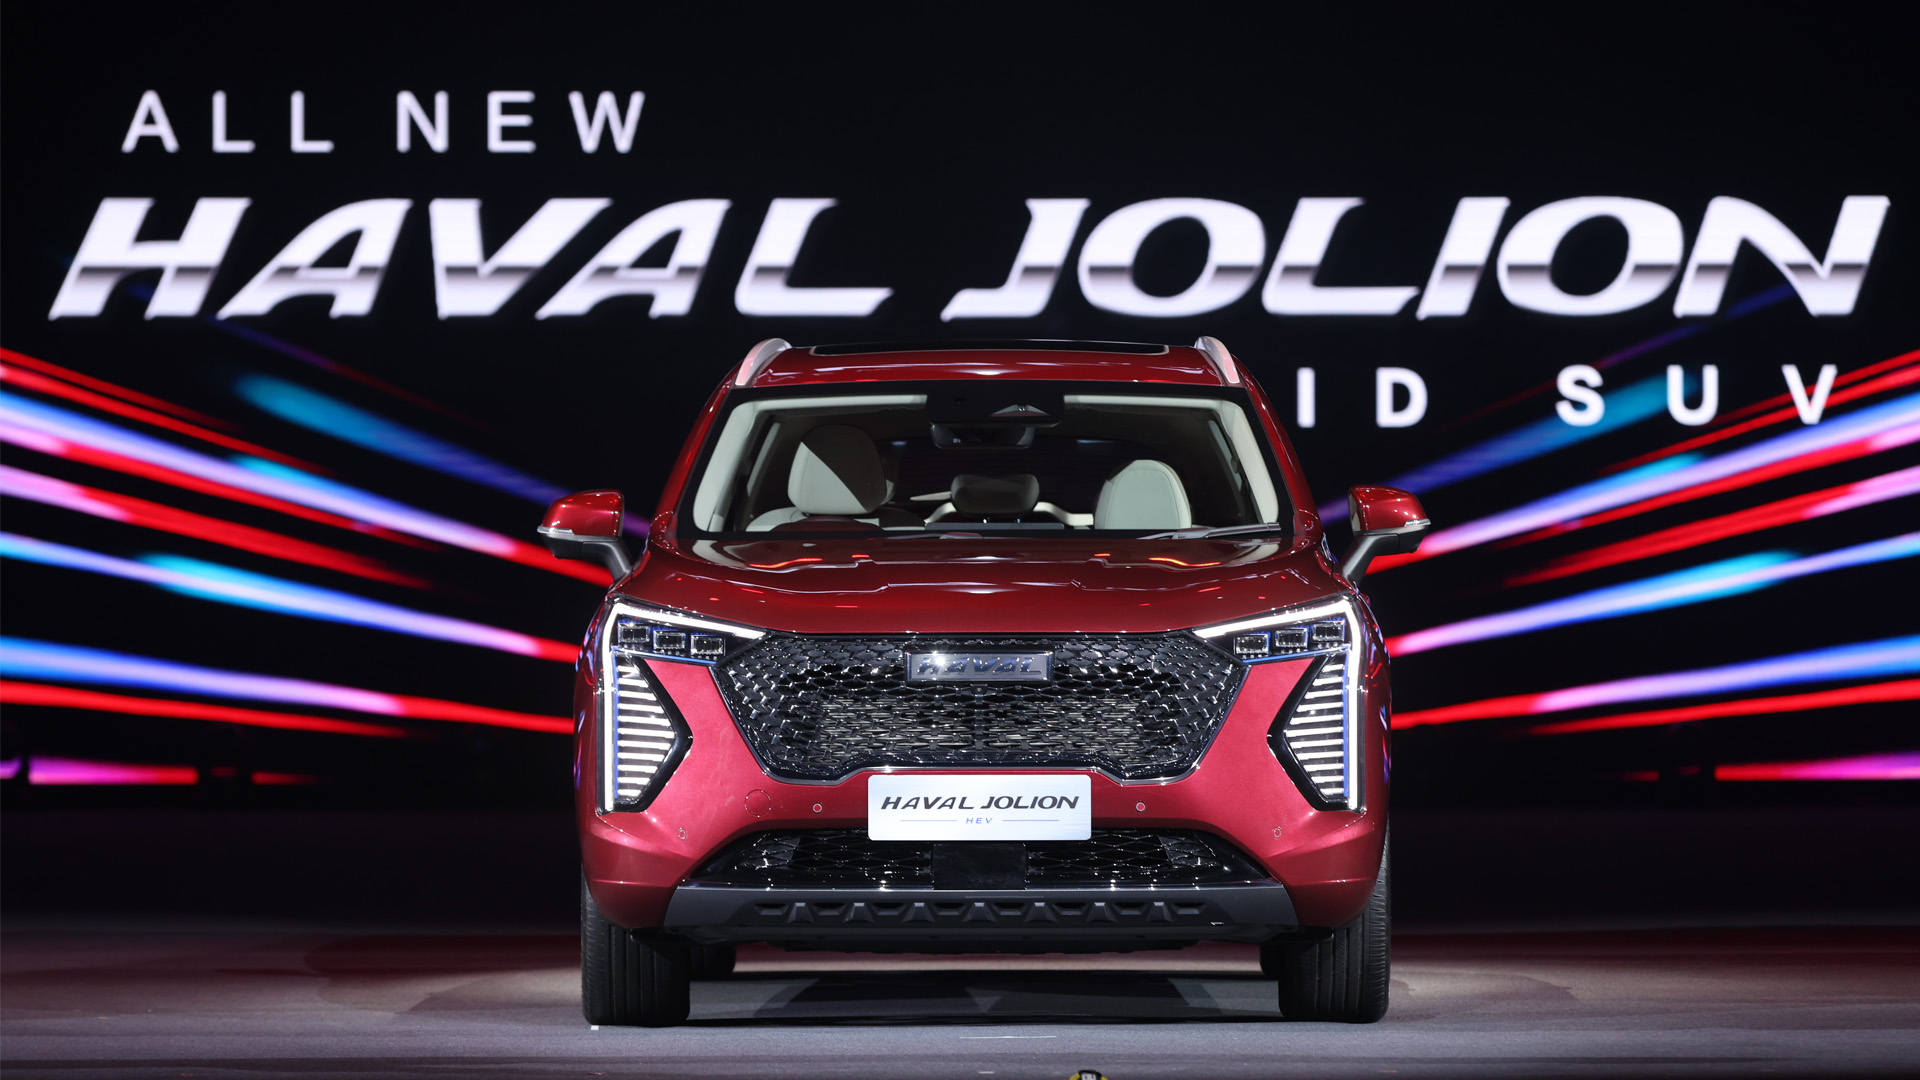 เปิดตัว All New HAVAL JOLION Hybrid SUV ตอบโจทย์ทุกไลฟ์สไตล์การขับขี่ ราคาเริ่มต้นที่ 879,000 บาท